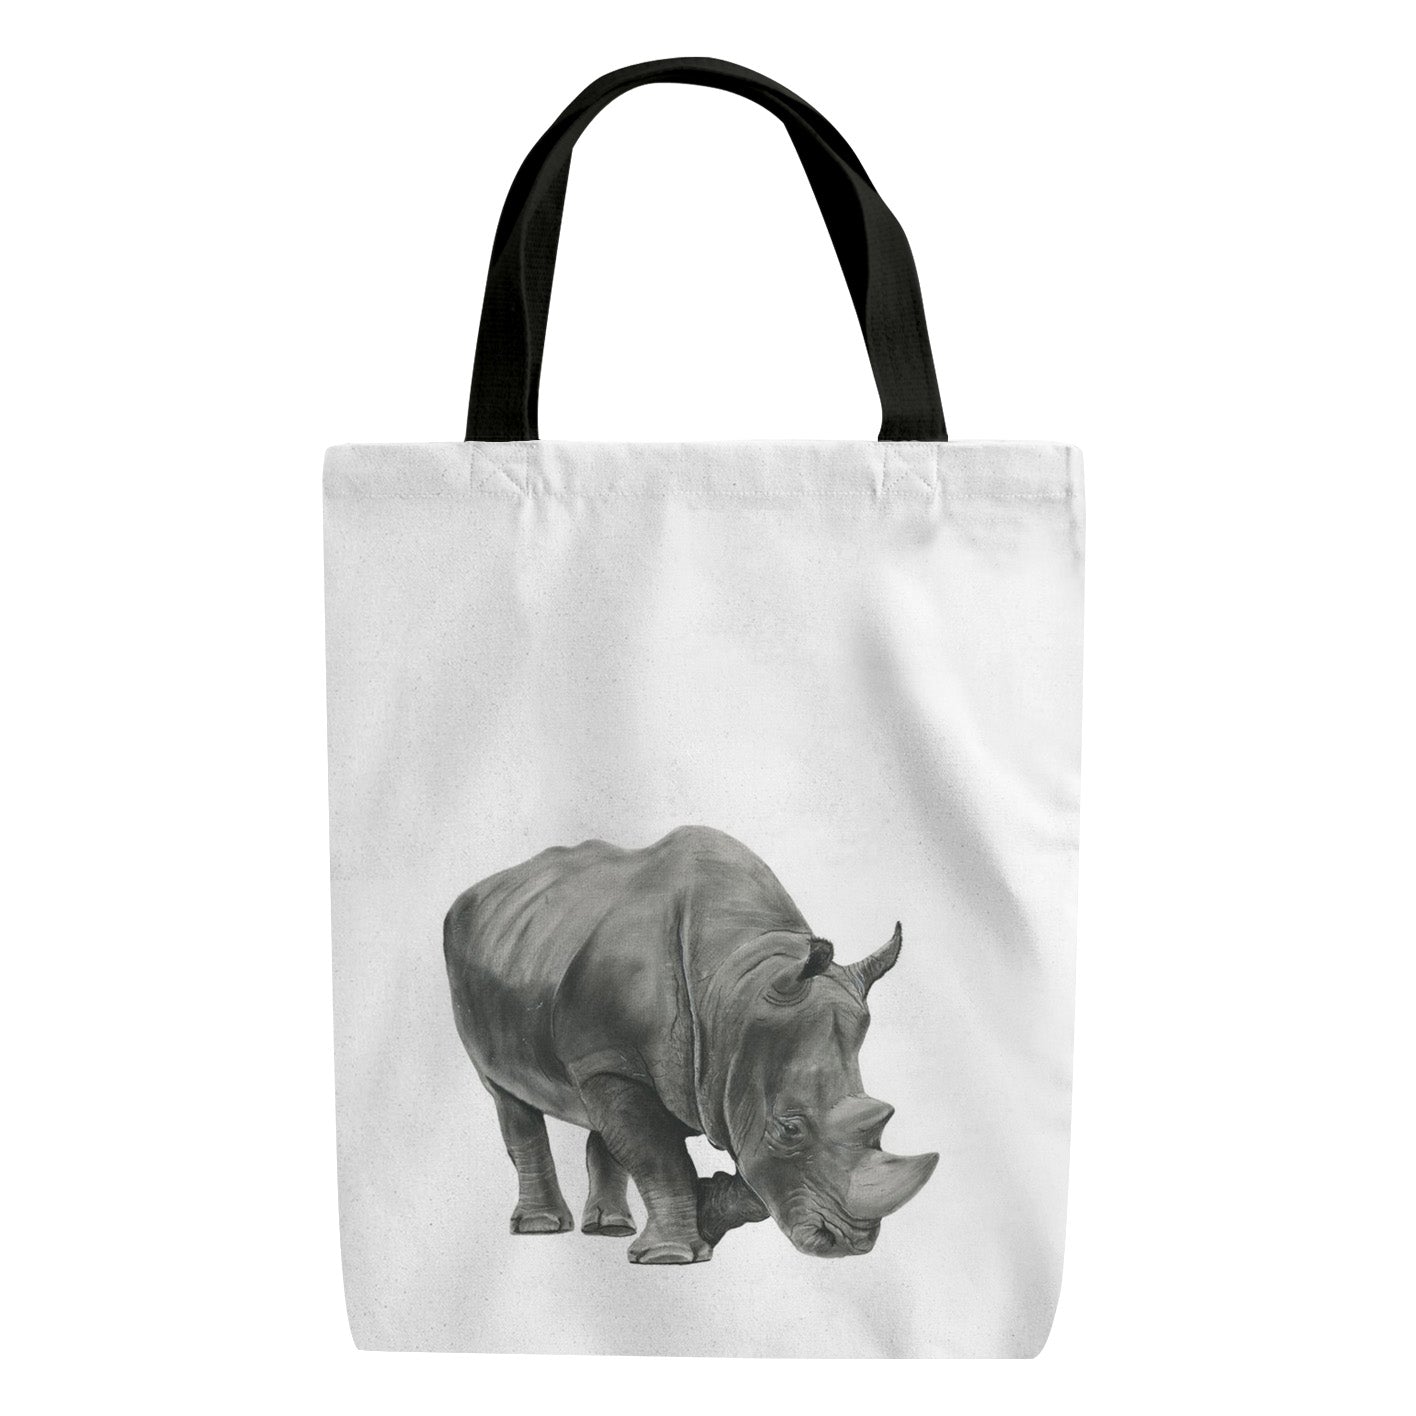 A Rhino Reusable Shopper Bag From Libra Fine Arts